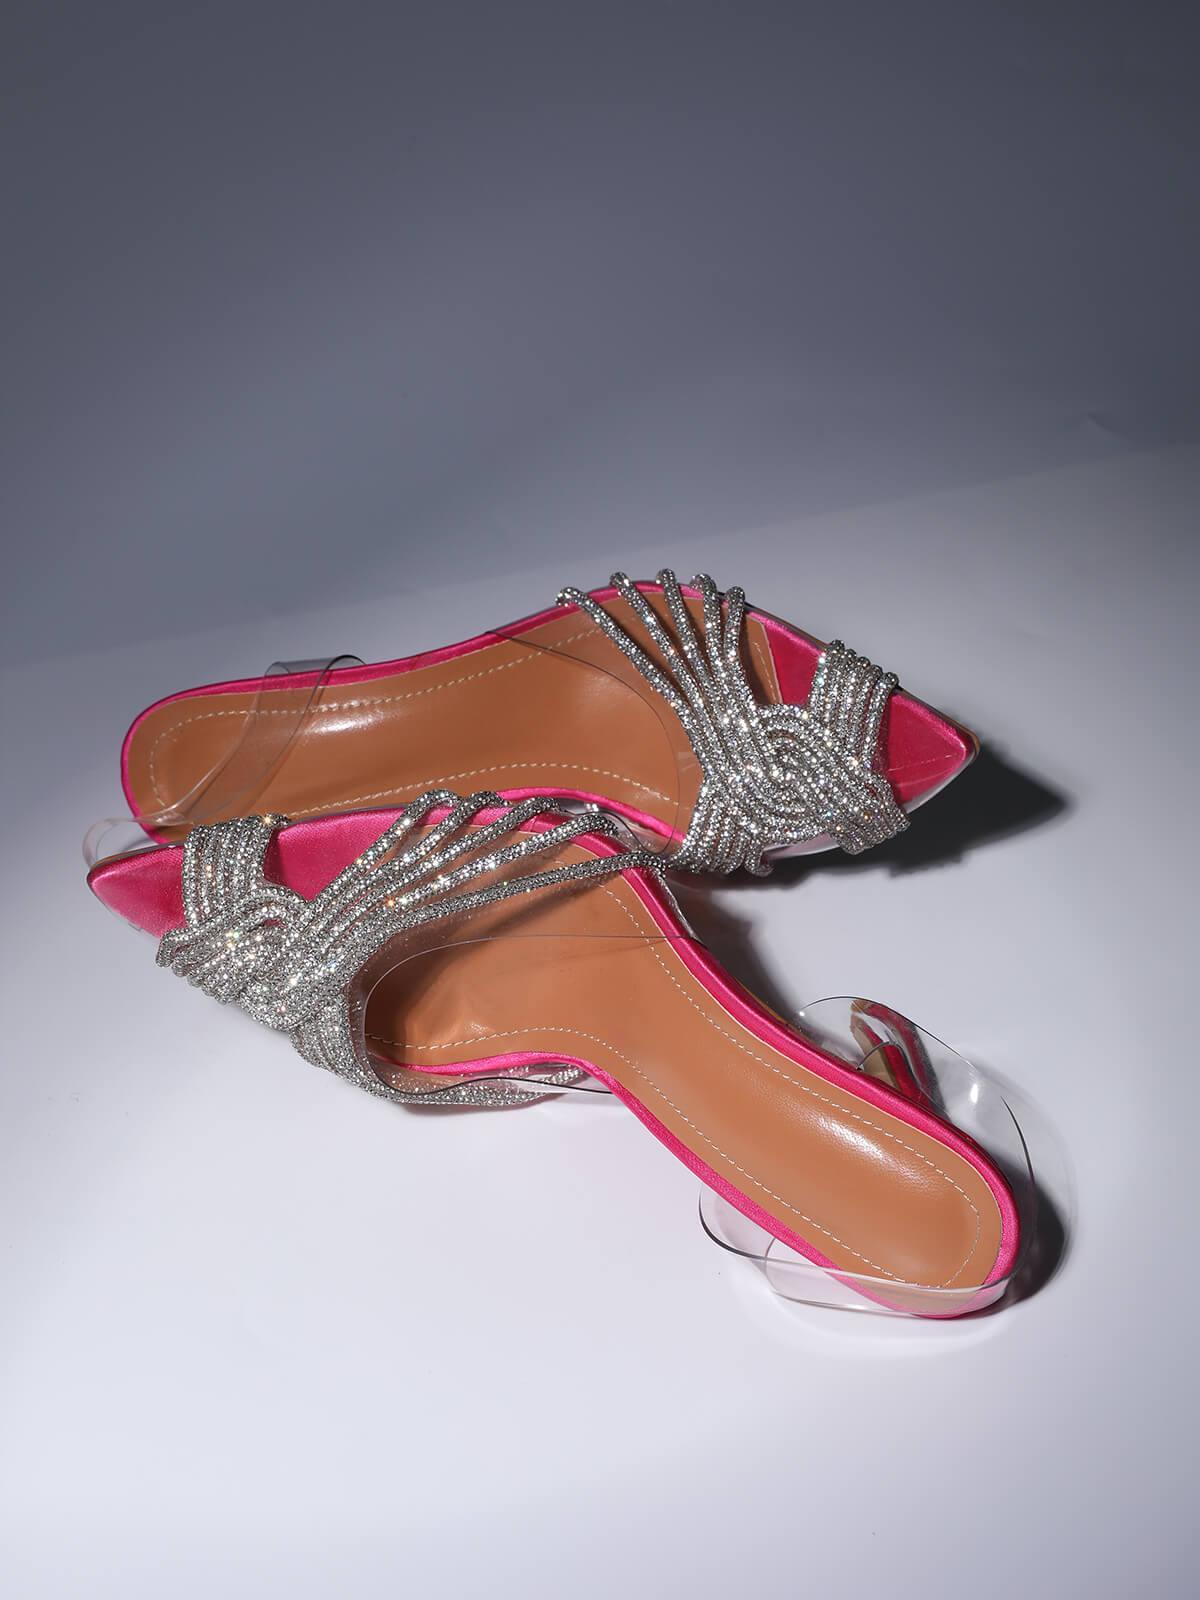 Crystal EmbelliShed SandALS In Hot Pink